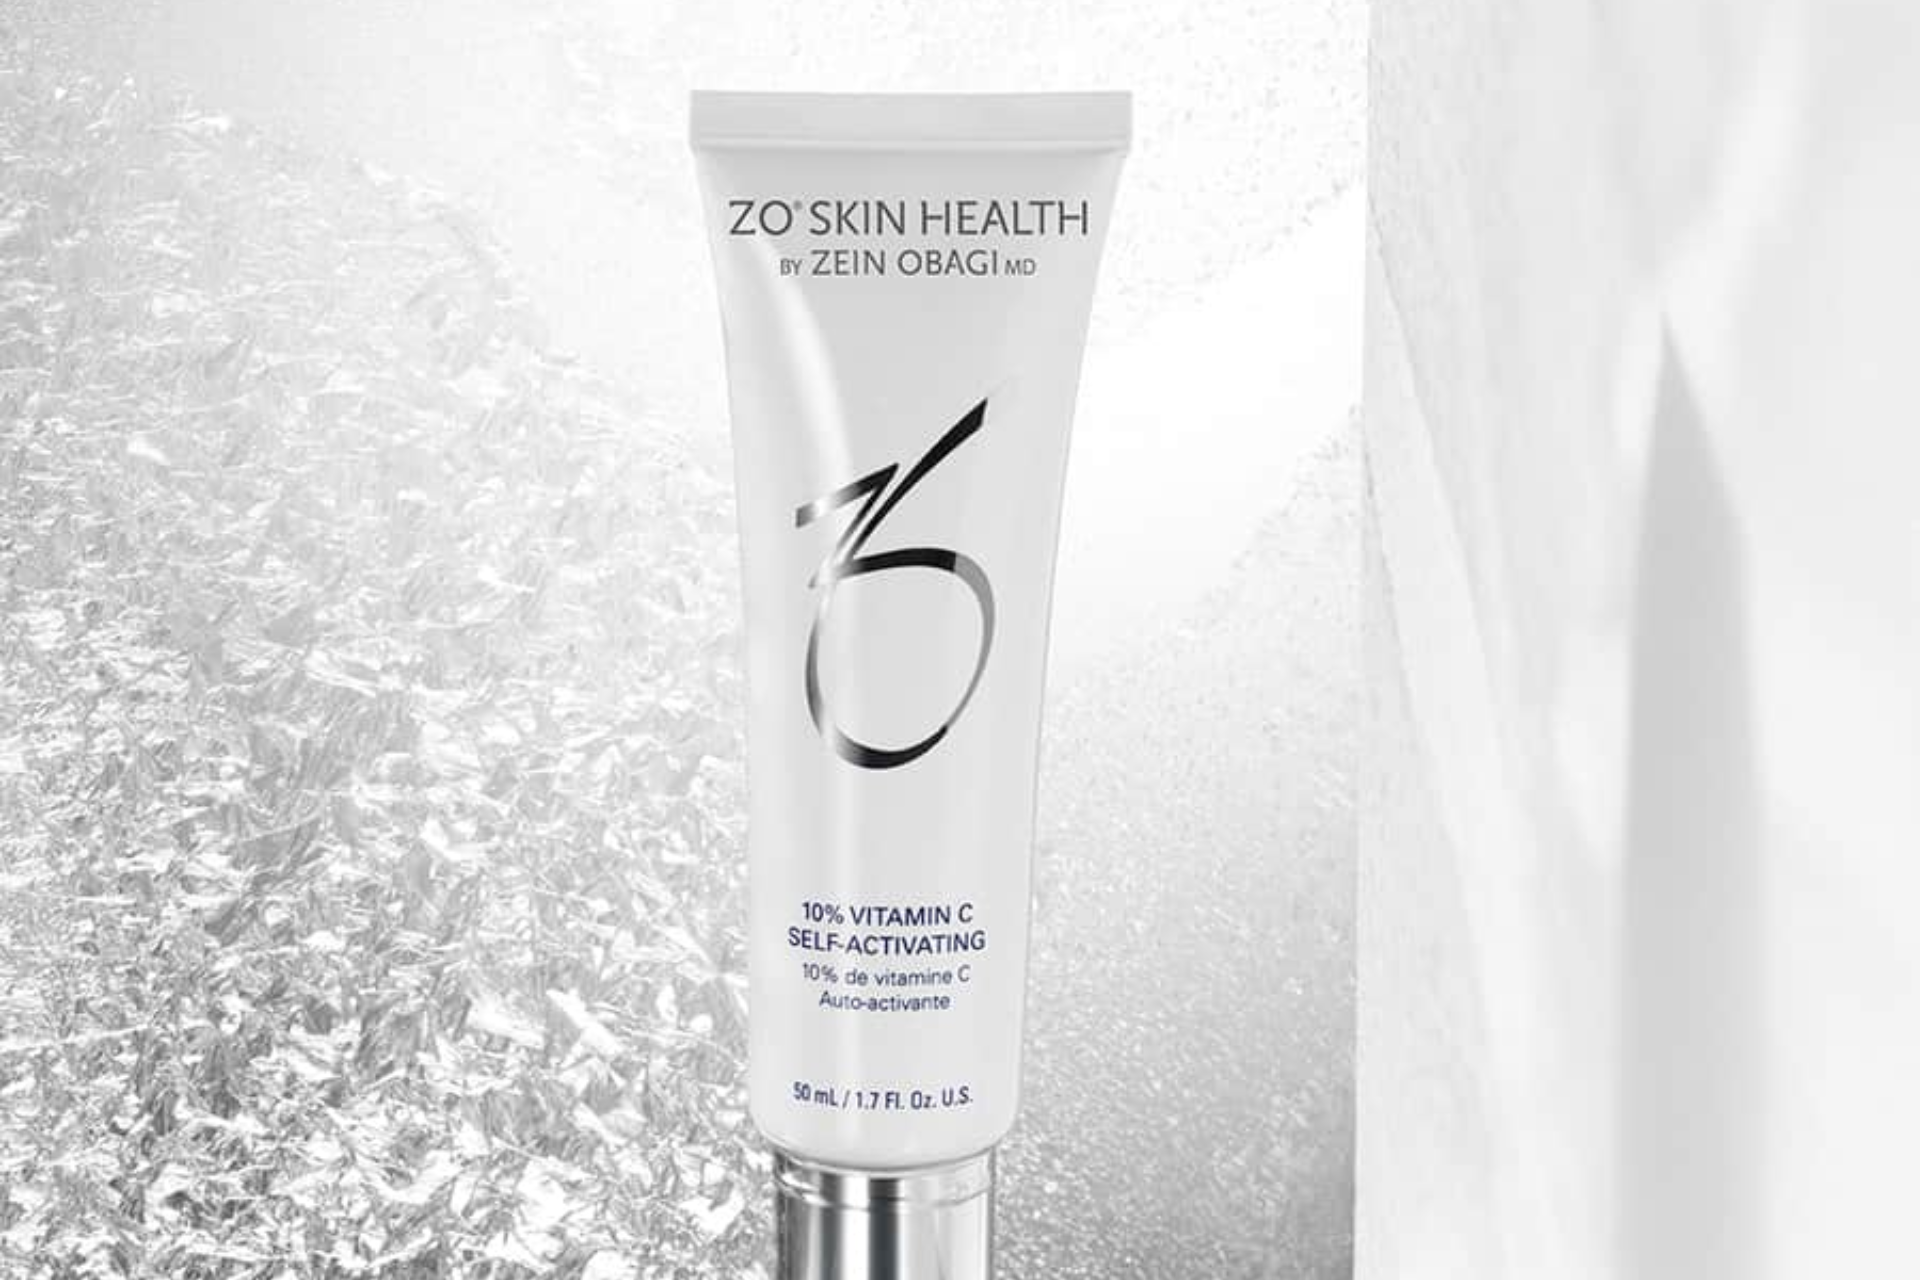  ZO Skin Health Vitamin C Serum 